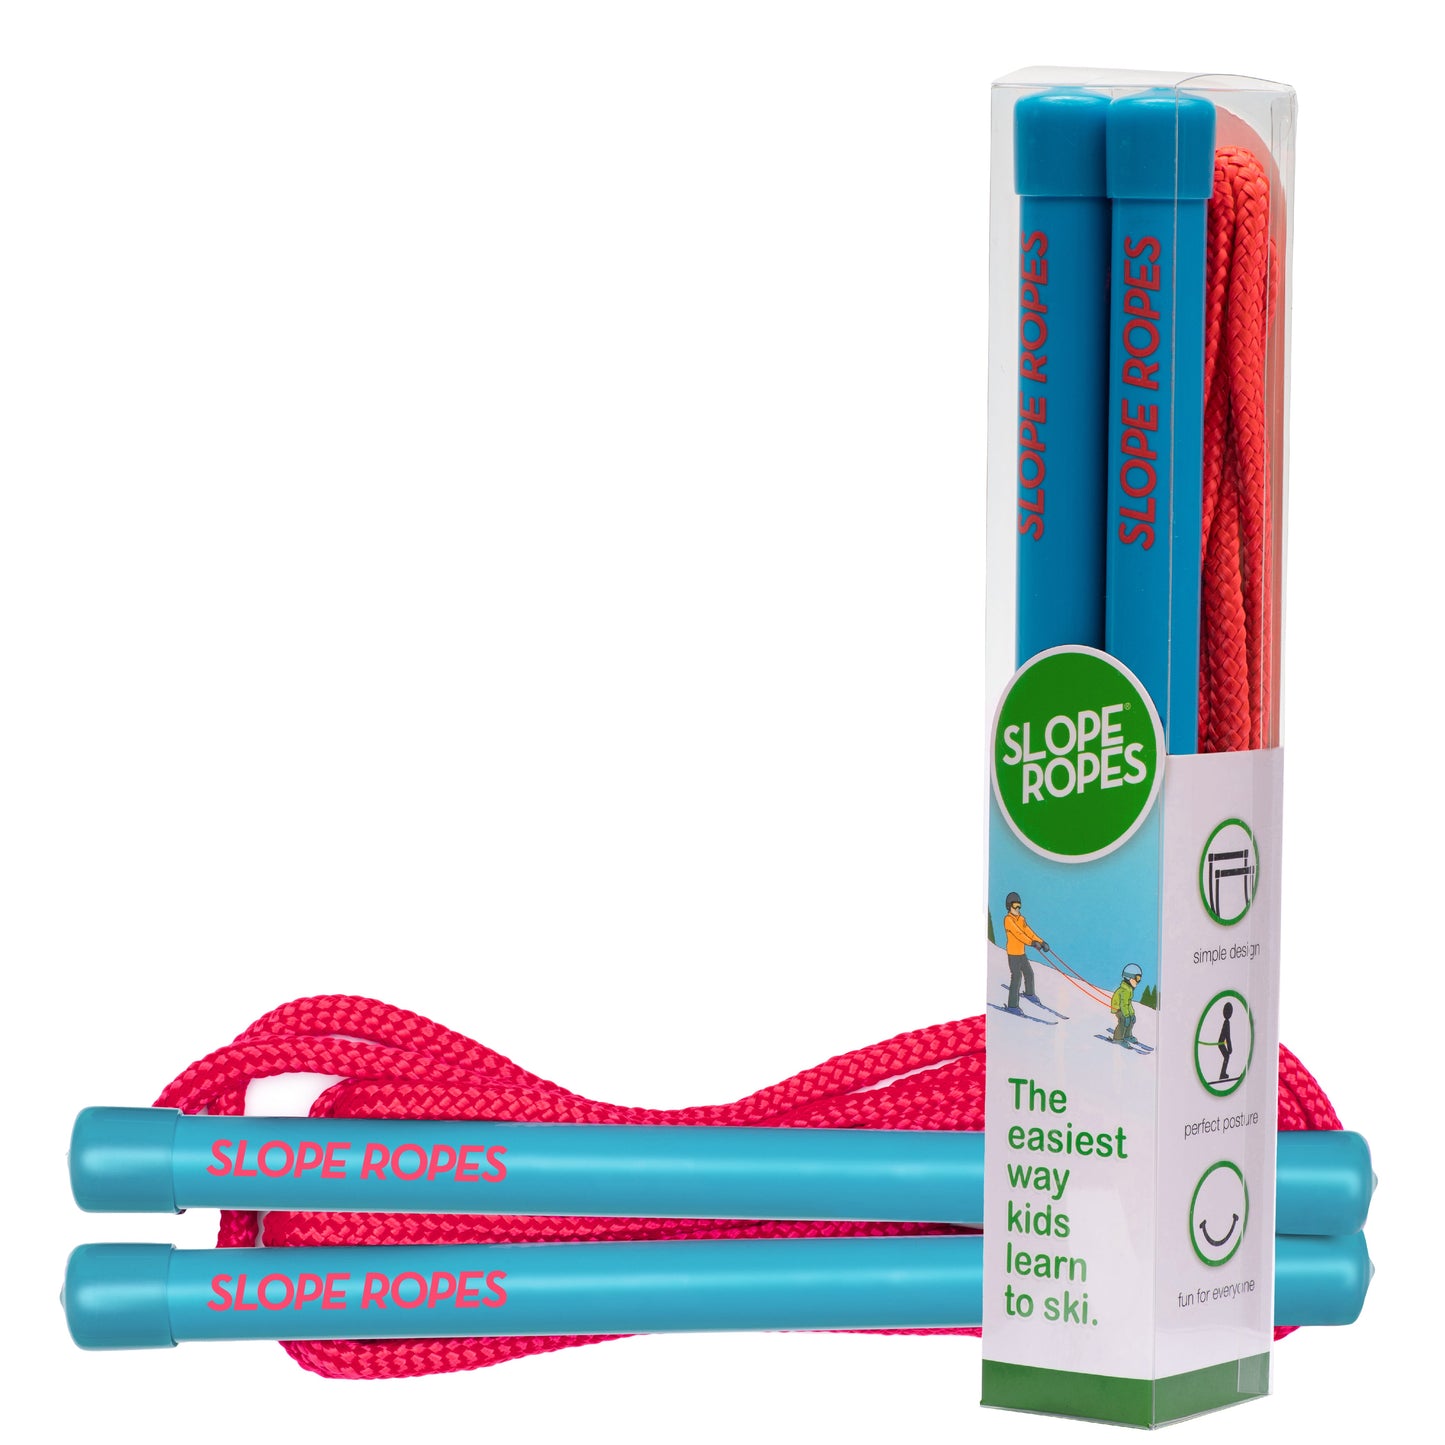 Slope Ropes® Kids Ski Trainer